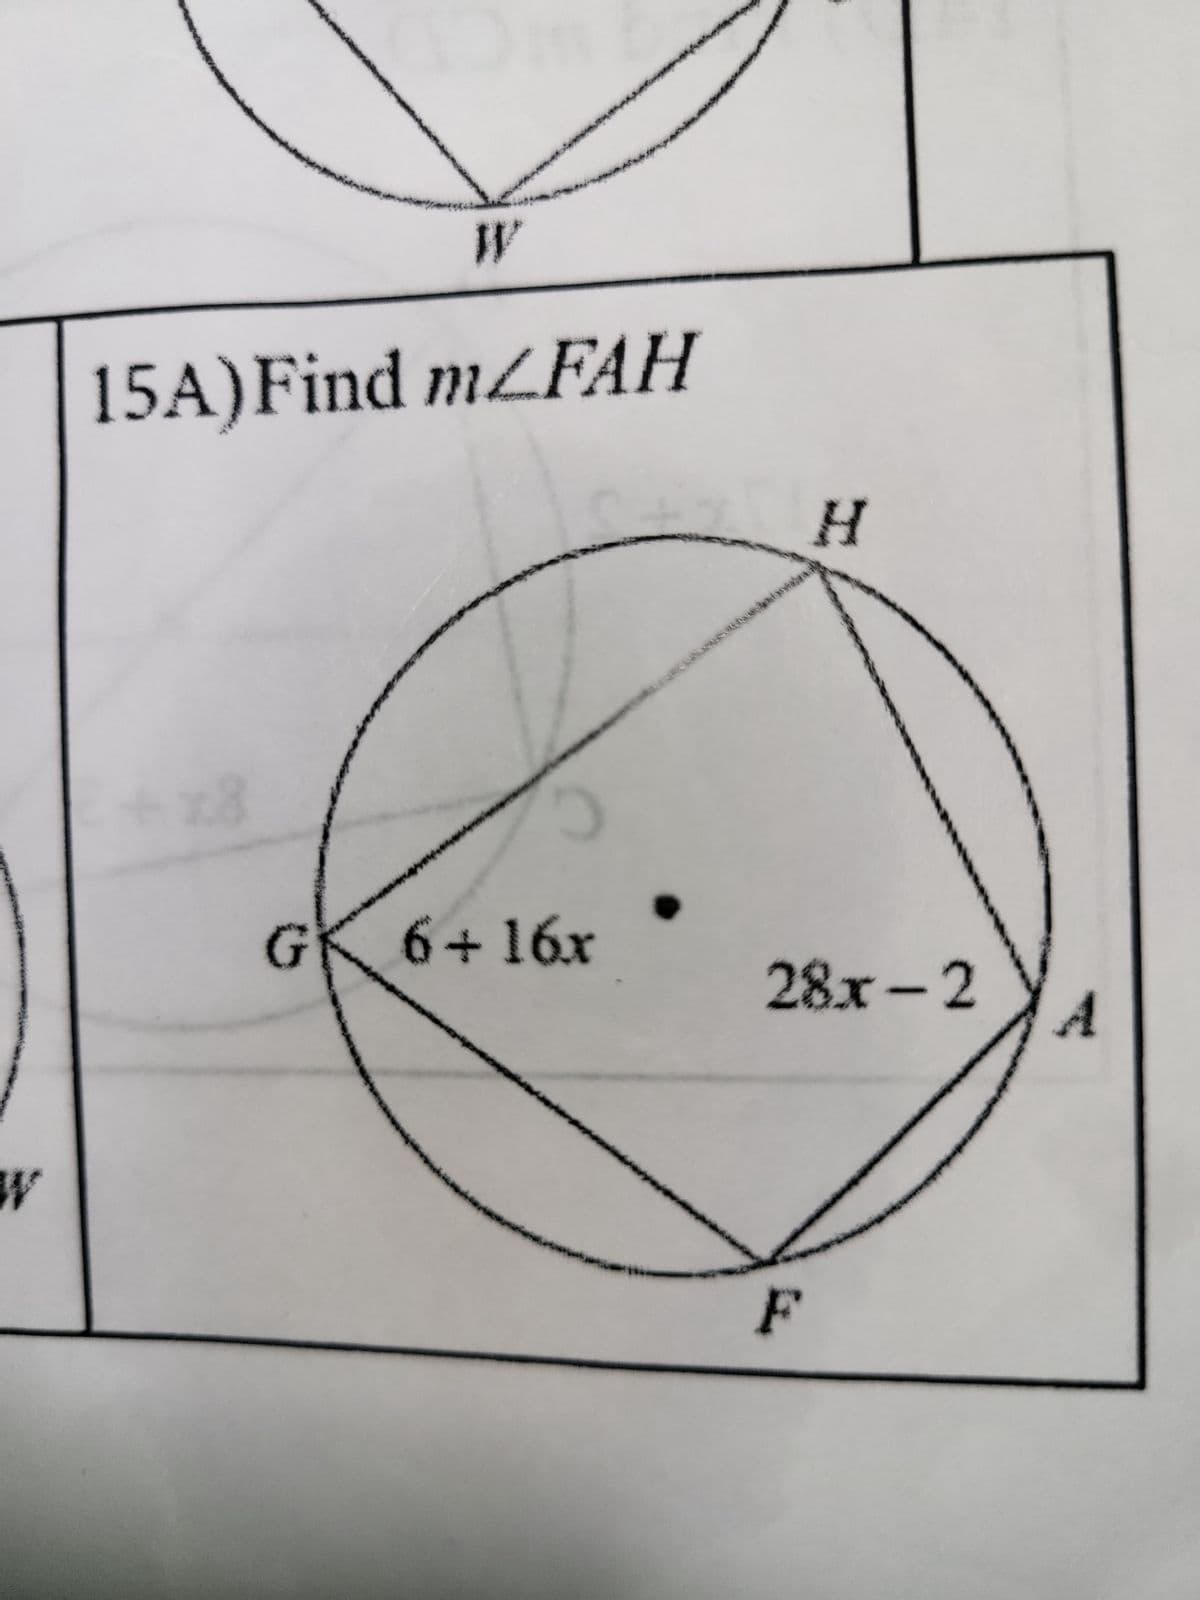 W
15A)Find mZFAH
x8
G 6+16x
H
28x-2
F
A